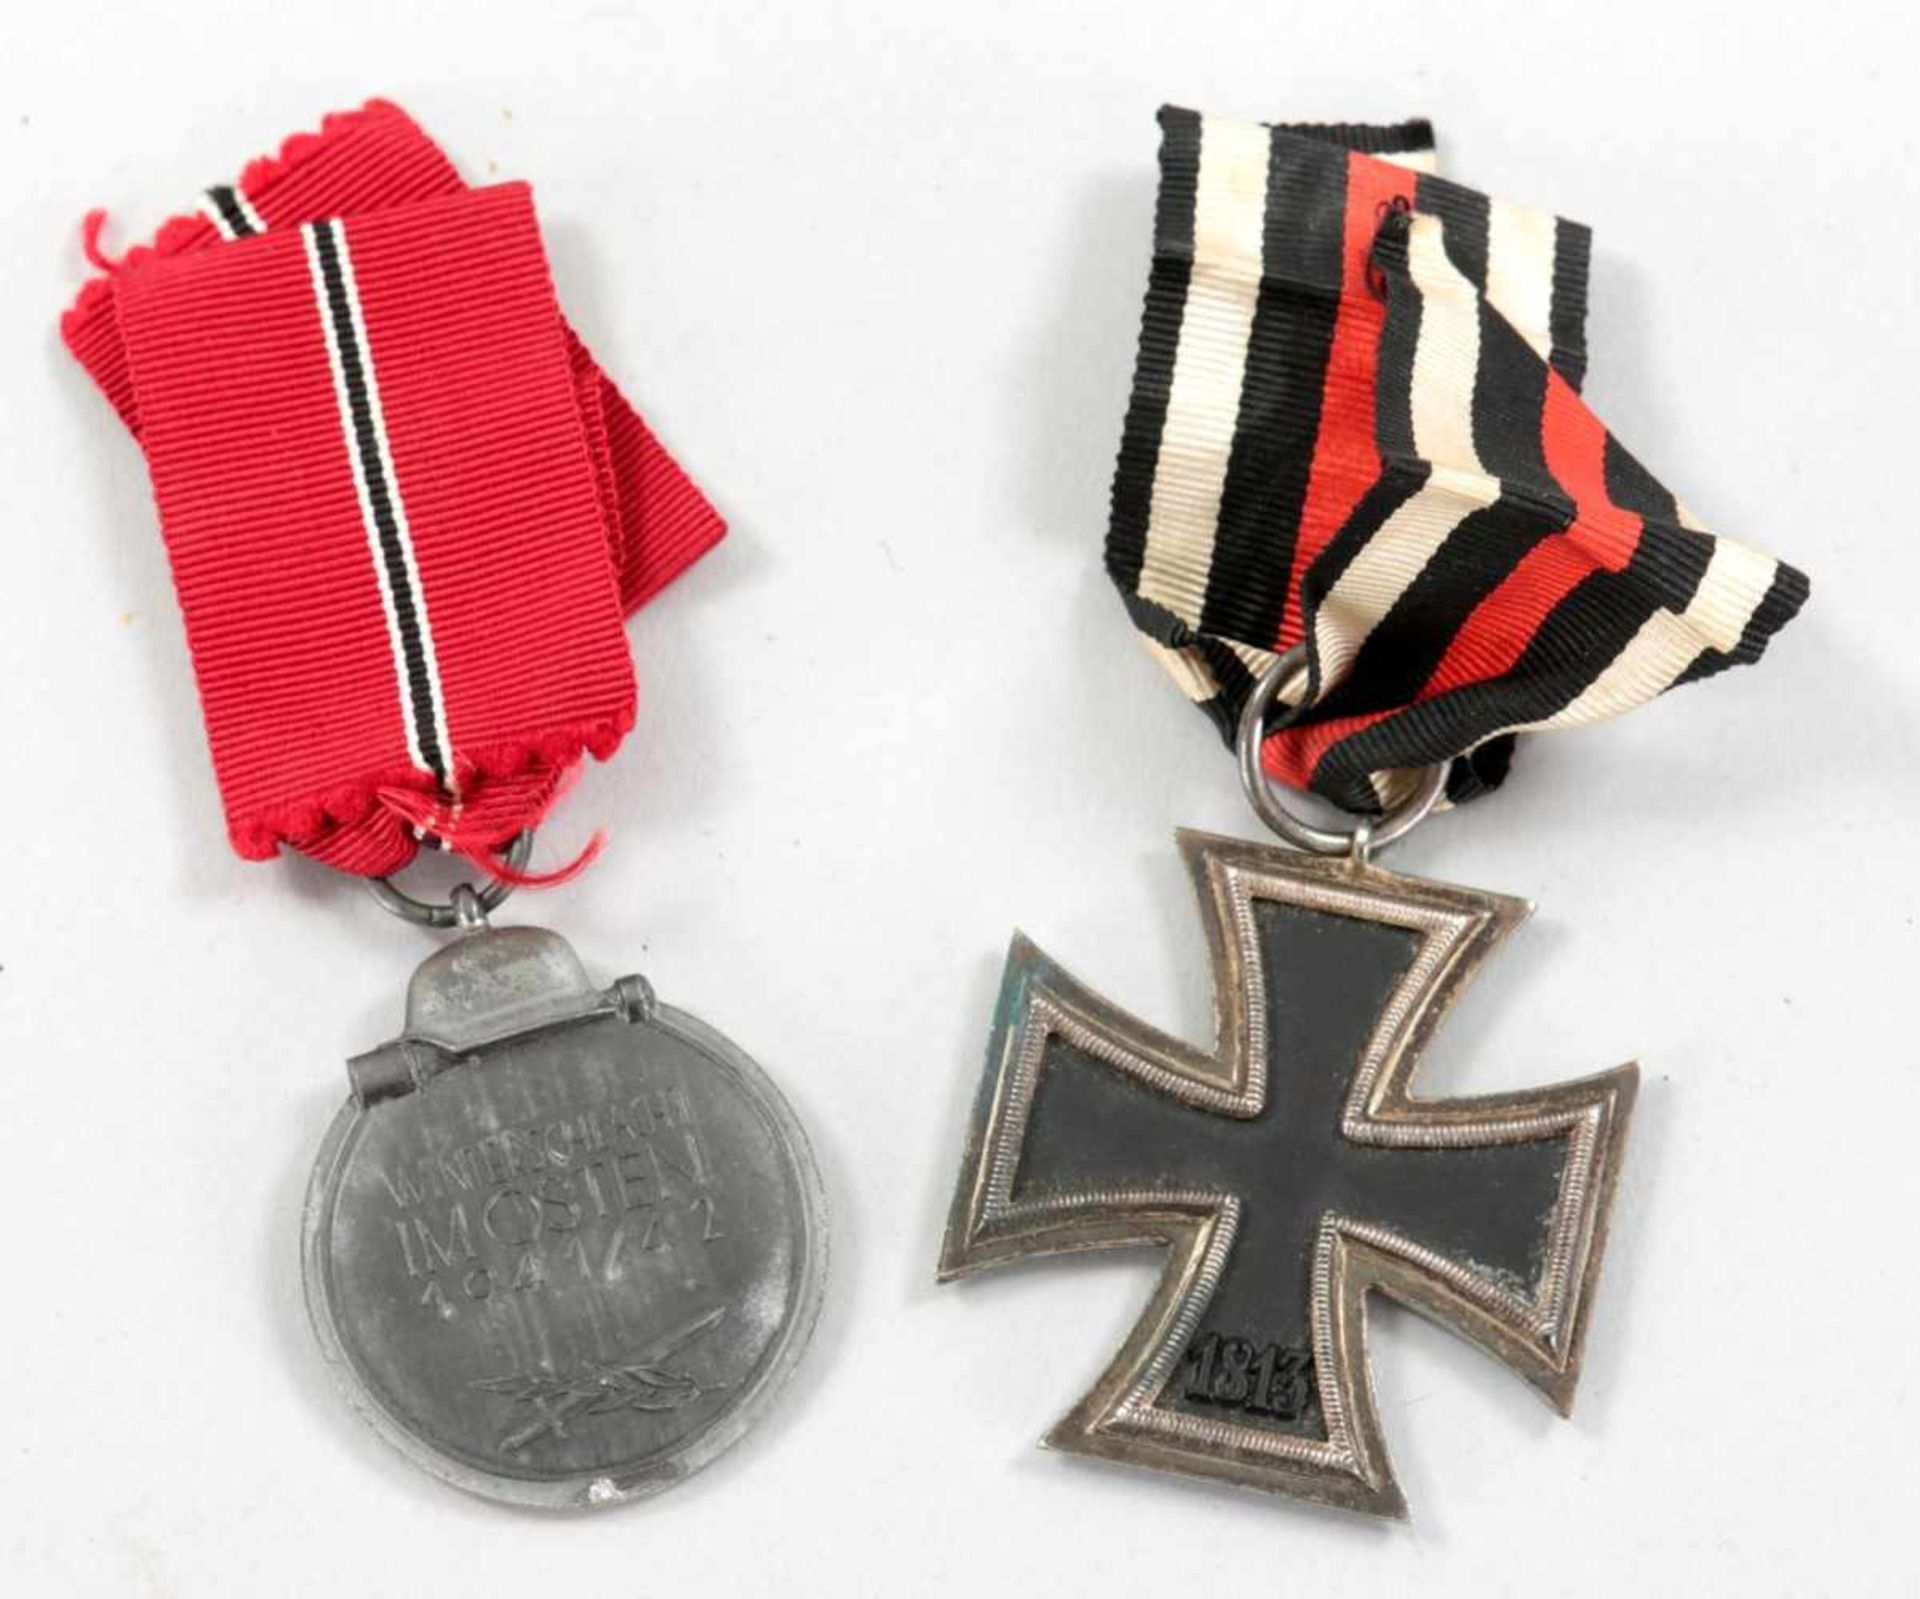 2 OrdenMetall u.a., 3. Reich Eisernes Kreuz 1939 am Bande sowie Verdienstmedaille "Winterschlacht im